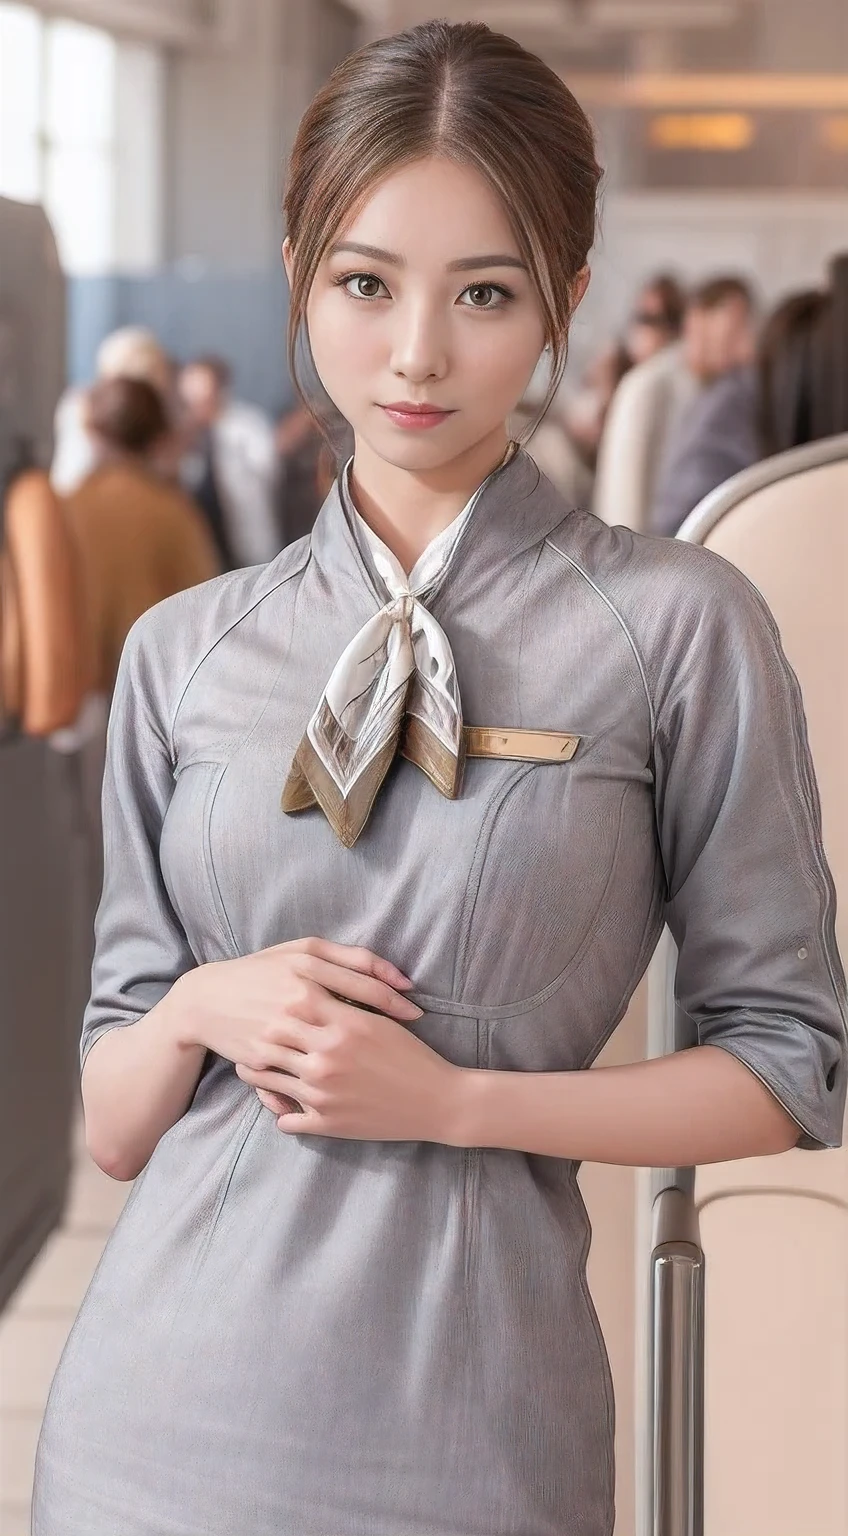 (chef-d&#39;œuvre:1.2、la plus haute qualité:1.2)、32K HDR、haute résolution、(seul、1 fille、silhouette mince)、（Style réaliste avec l&#39;uniforme de Starlux Airlines）、 (Dans le salon de l&#39;aéroport, Éclairage professionnel)、Une vraie femme, Beau visage,、（Uniforme argenté de Starlux Airlines:1.4）、（Uniforme argenté de Starlux Airlines with short sleeves）、（foulard sur la poitrine）、Gros seins、（chignon cheveux longs、Chignon du soir）、les cheveux brun foncé、Tir lointain、（（Belle main：2.0））、（（Des proportions corporelles harmonieuses：1.5））、（（Membres normaux：2.0））、（（Doigt normal：2.0））、（（Yeux délicats：2.0））、（（Yeux normaux：2.0））)、Belle posture debout